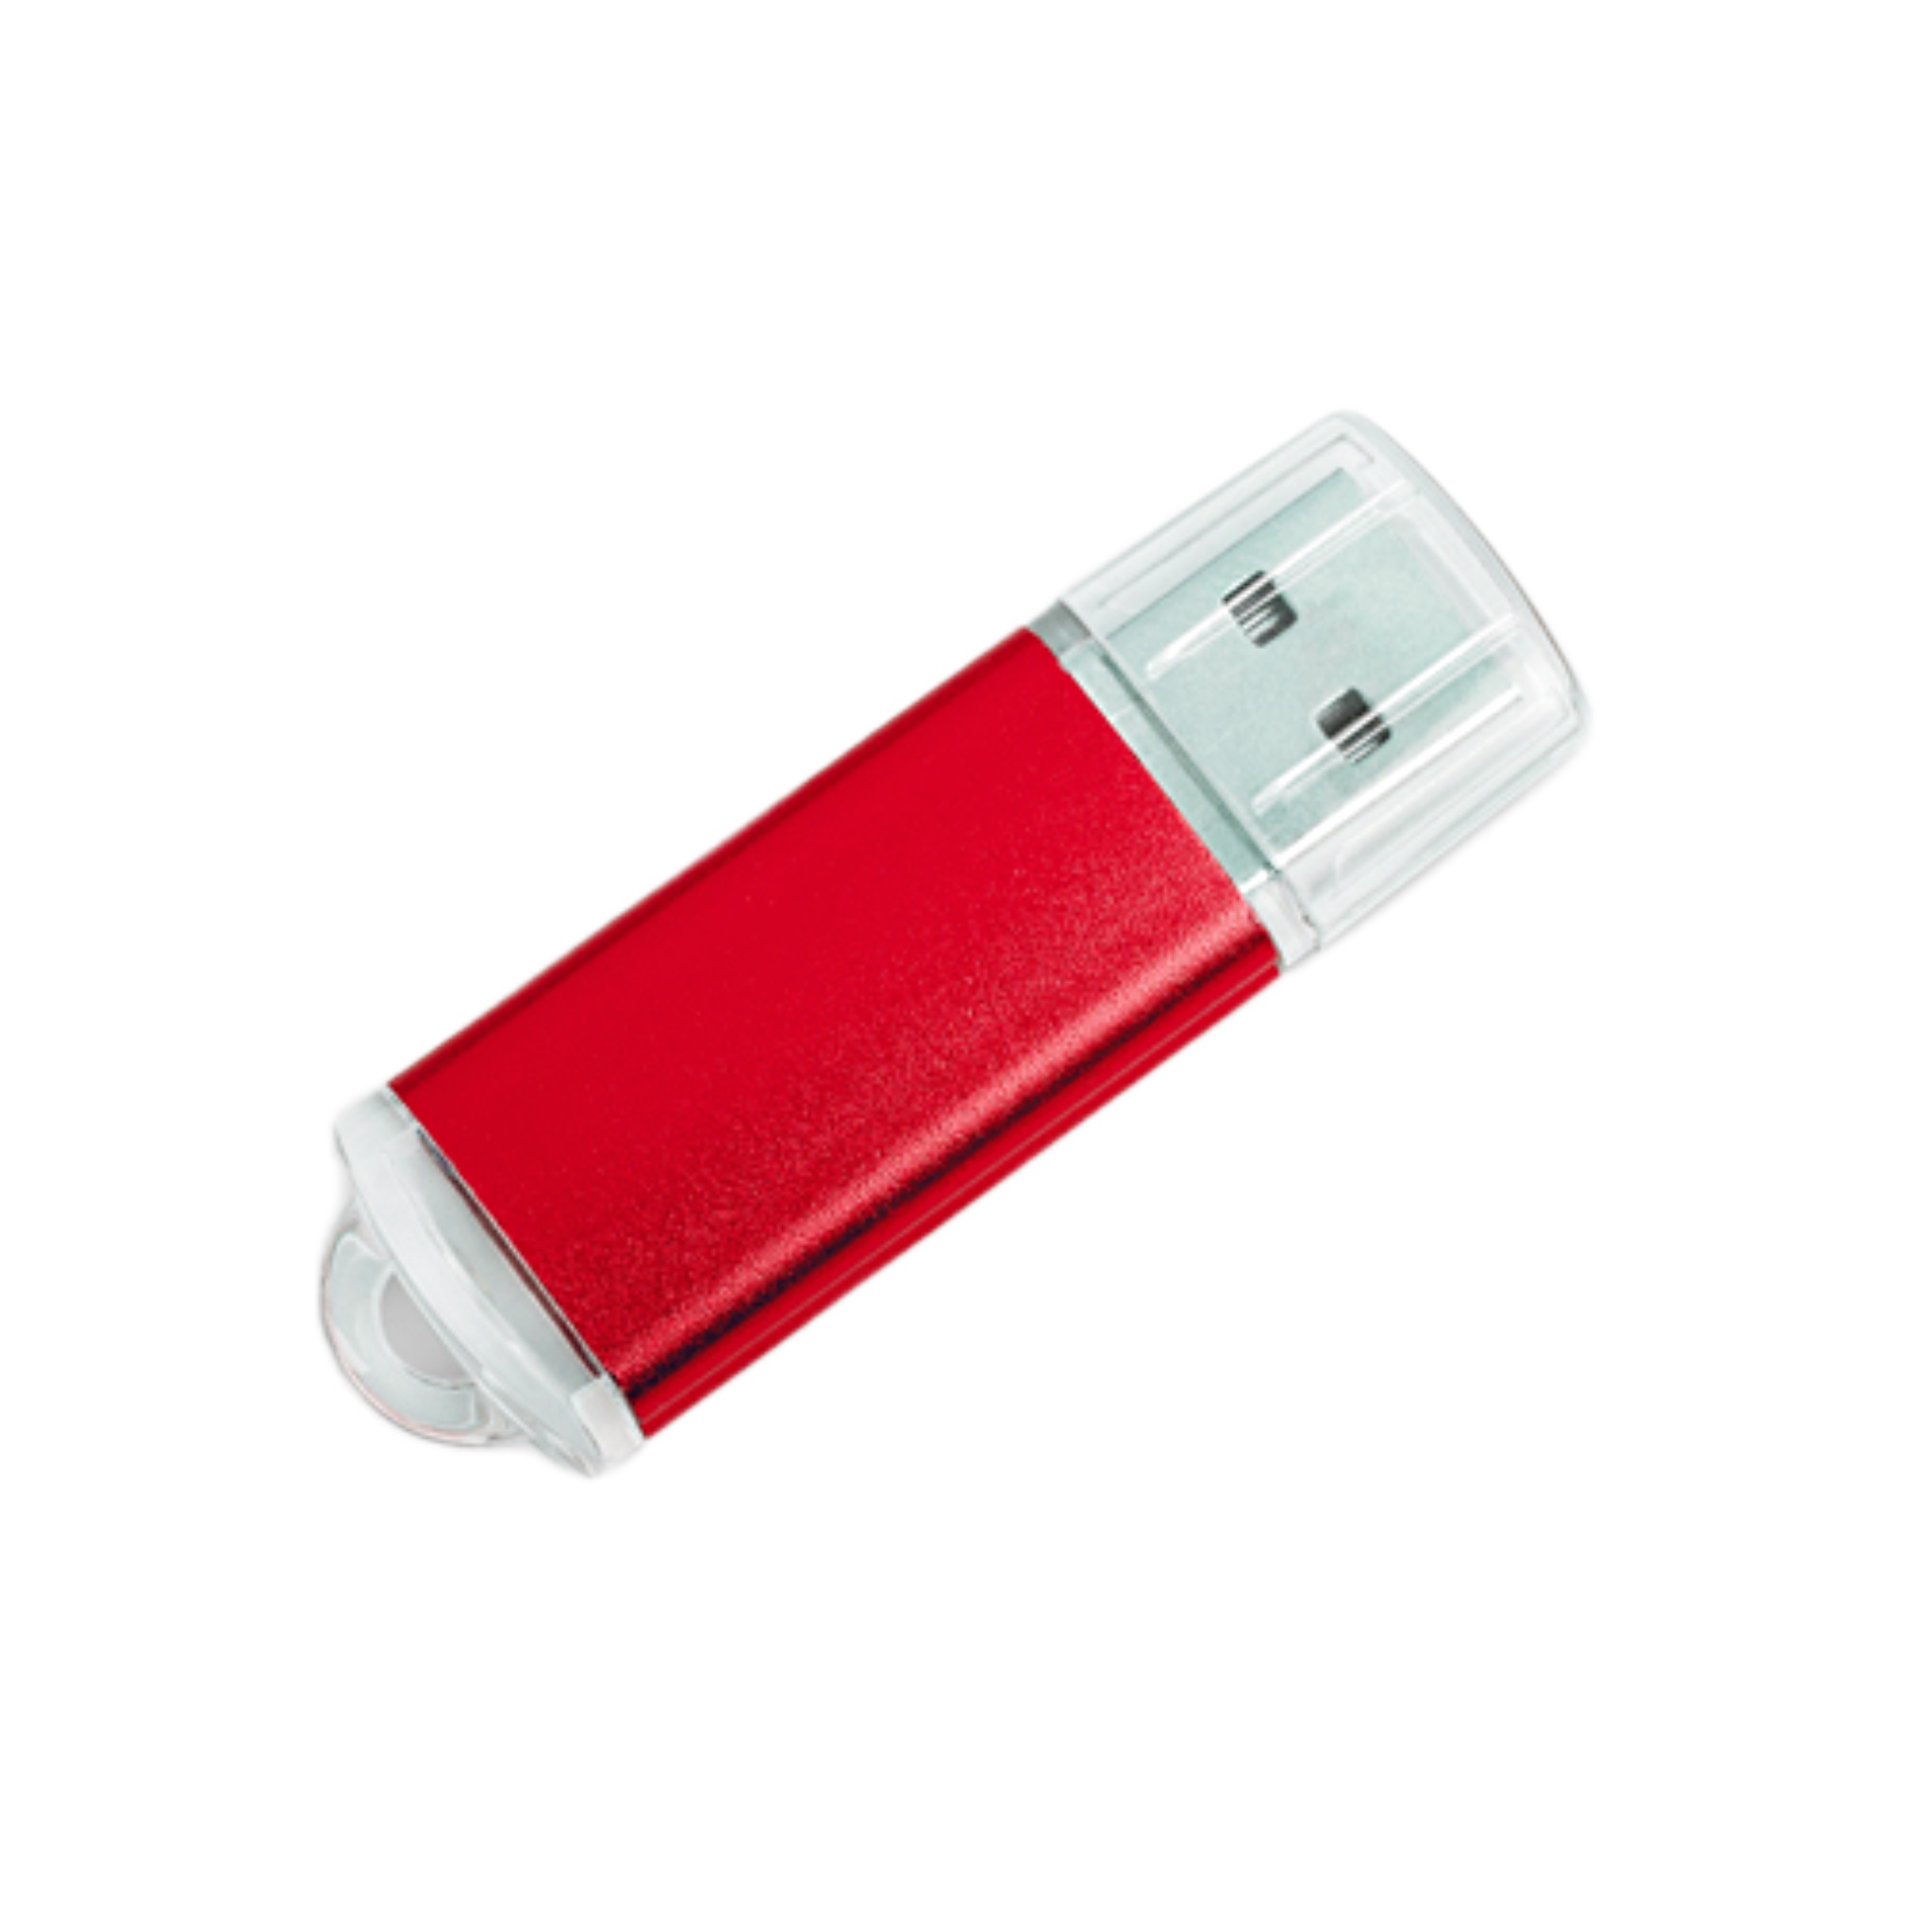 USB-флешка модель 120, (USB 3.0), объем памяти 32 GB, цвет  красный